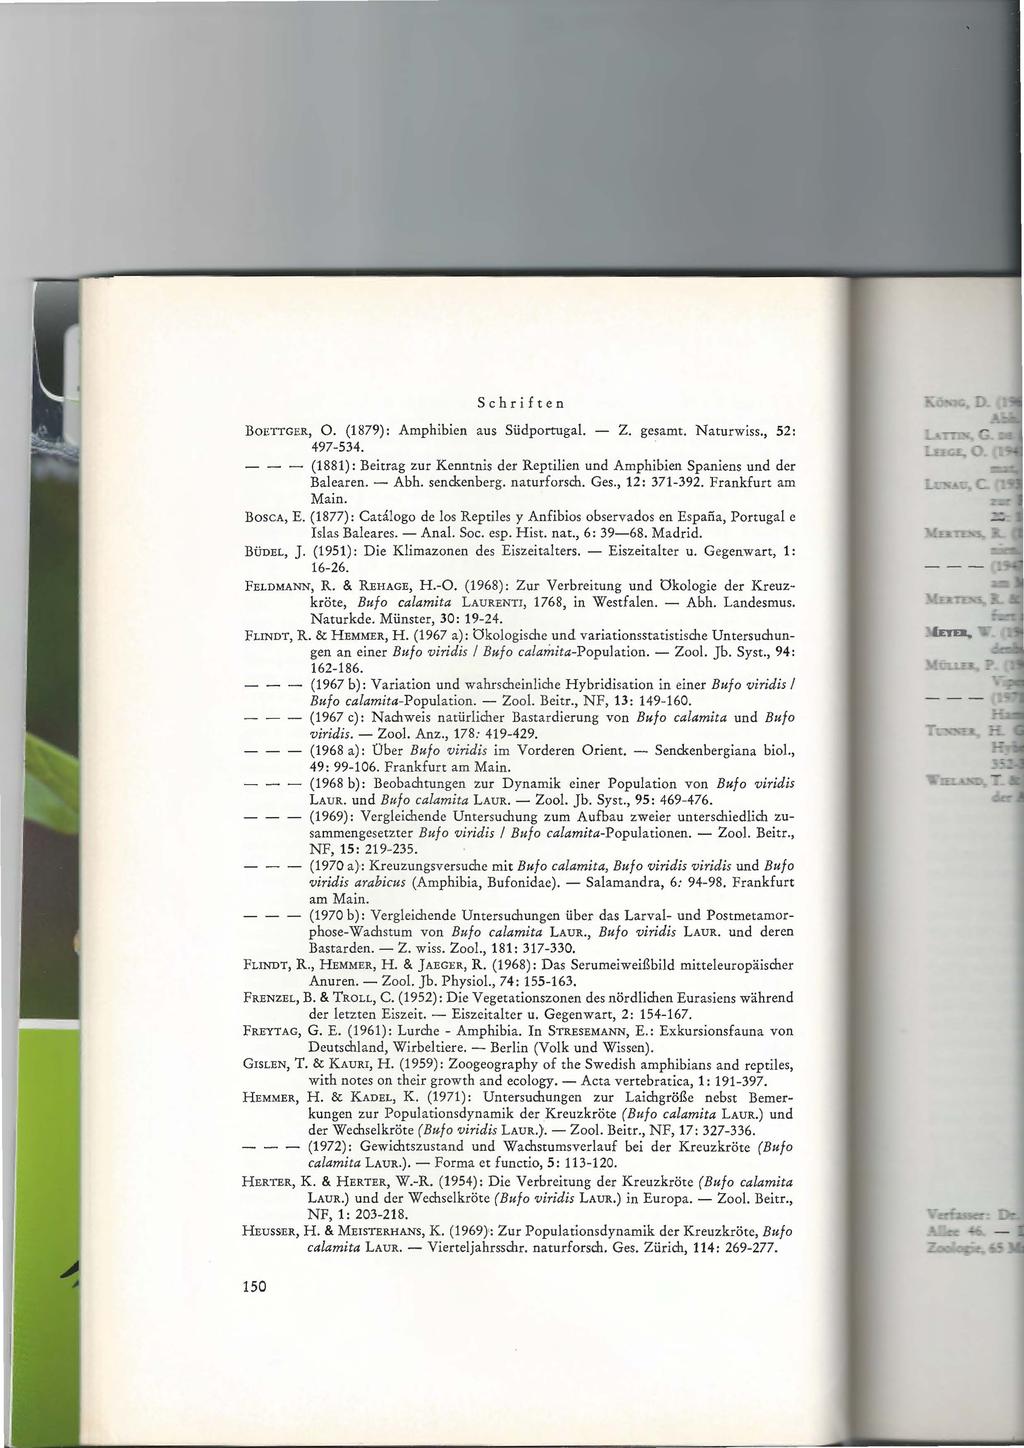 Schriften BoETTGER, 0. (1879): Amphibien aus Südportugal. - Z. gesamt. Naturwiss., 52: 497-534. - (1881): Beitrag zur Kenntnis der Reptilien und Amphibien Spaniens und der Balearen. - Abh.